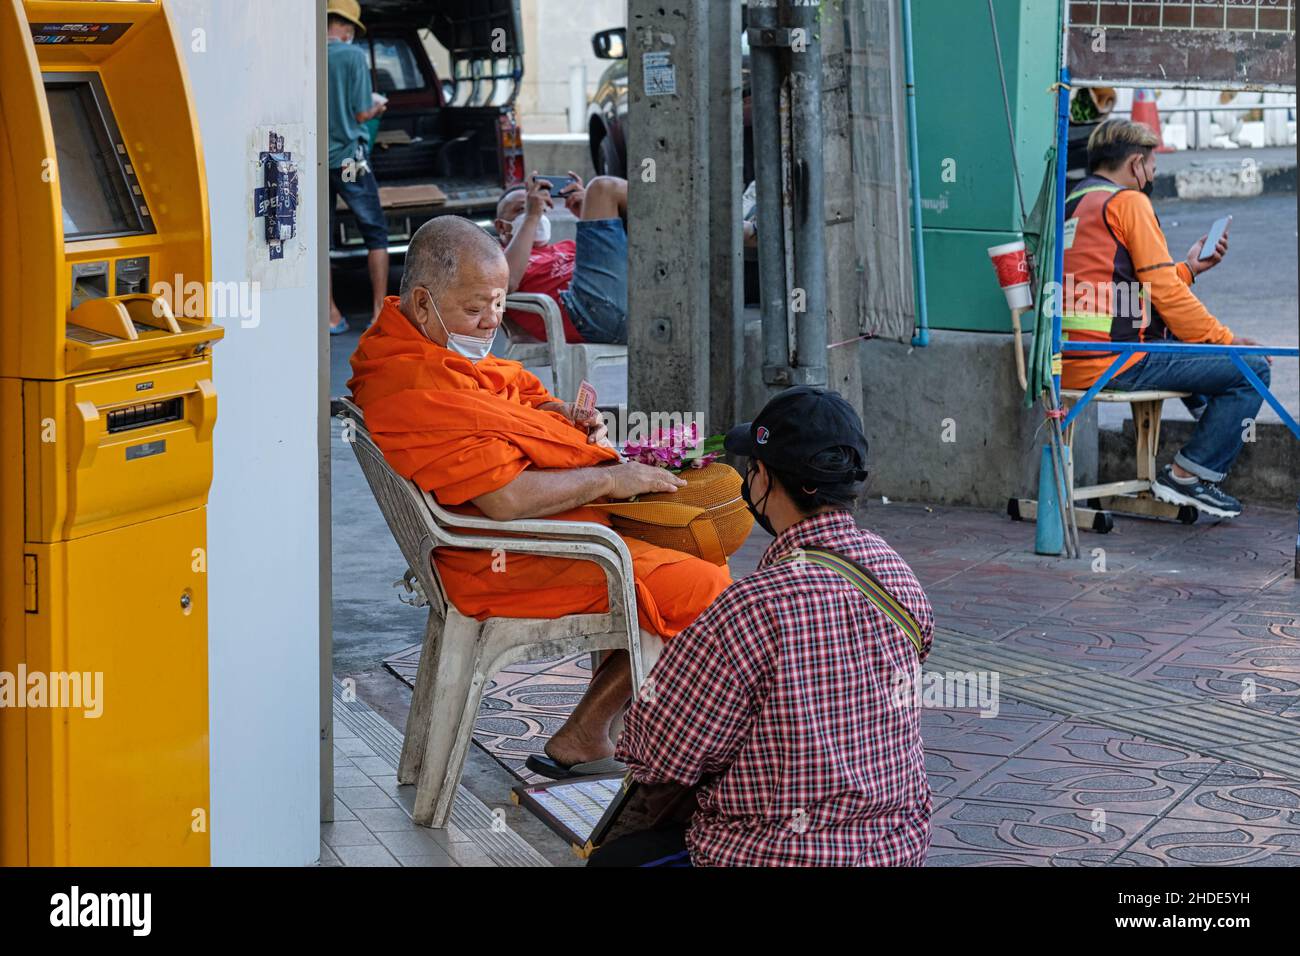 Ein buddhistischer Mönch mit orangenen Roben, der neben einem gelben Geldautomaten sitzt, überlegt, welche Lottoscheine von einem Lotteriehändler gekauft werden sollten; Bangkok, Thailand Stockfoto